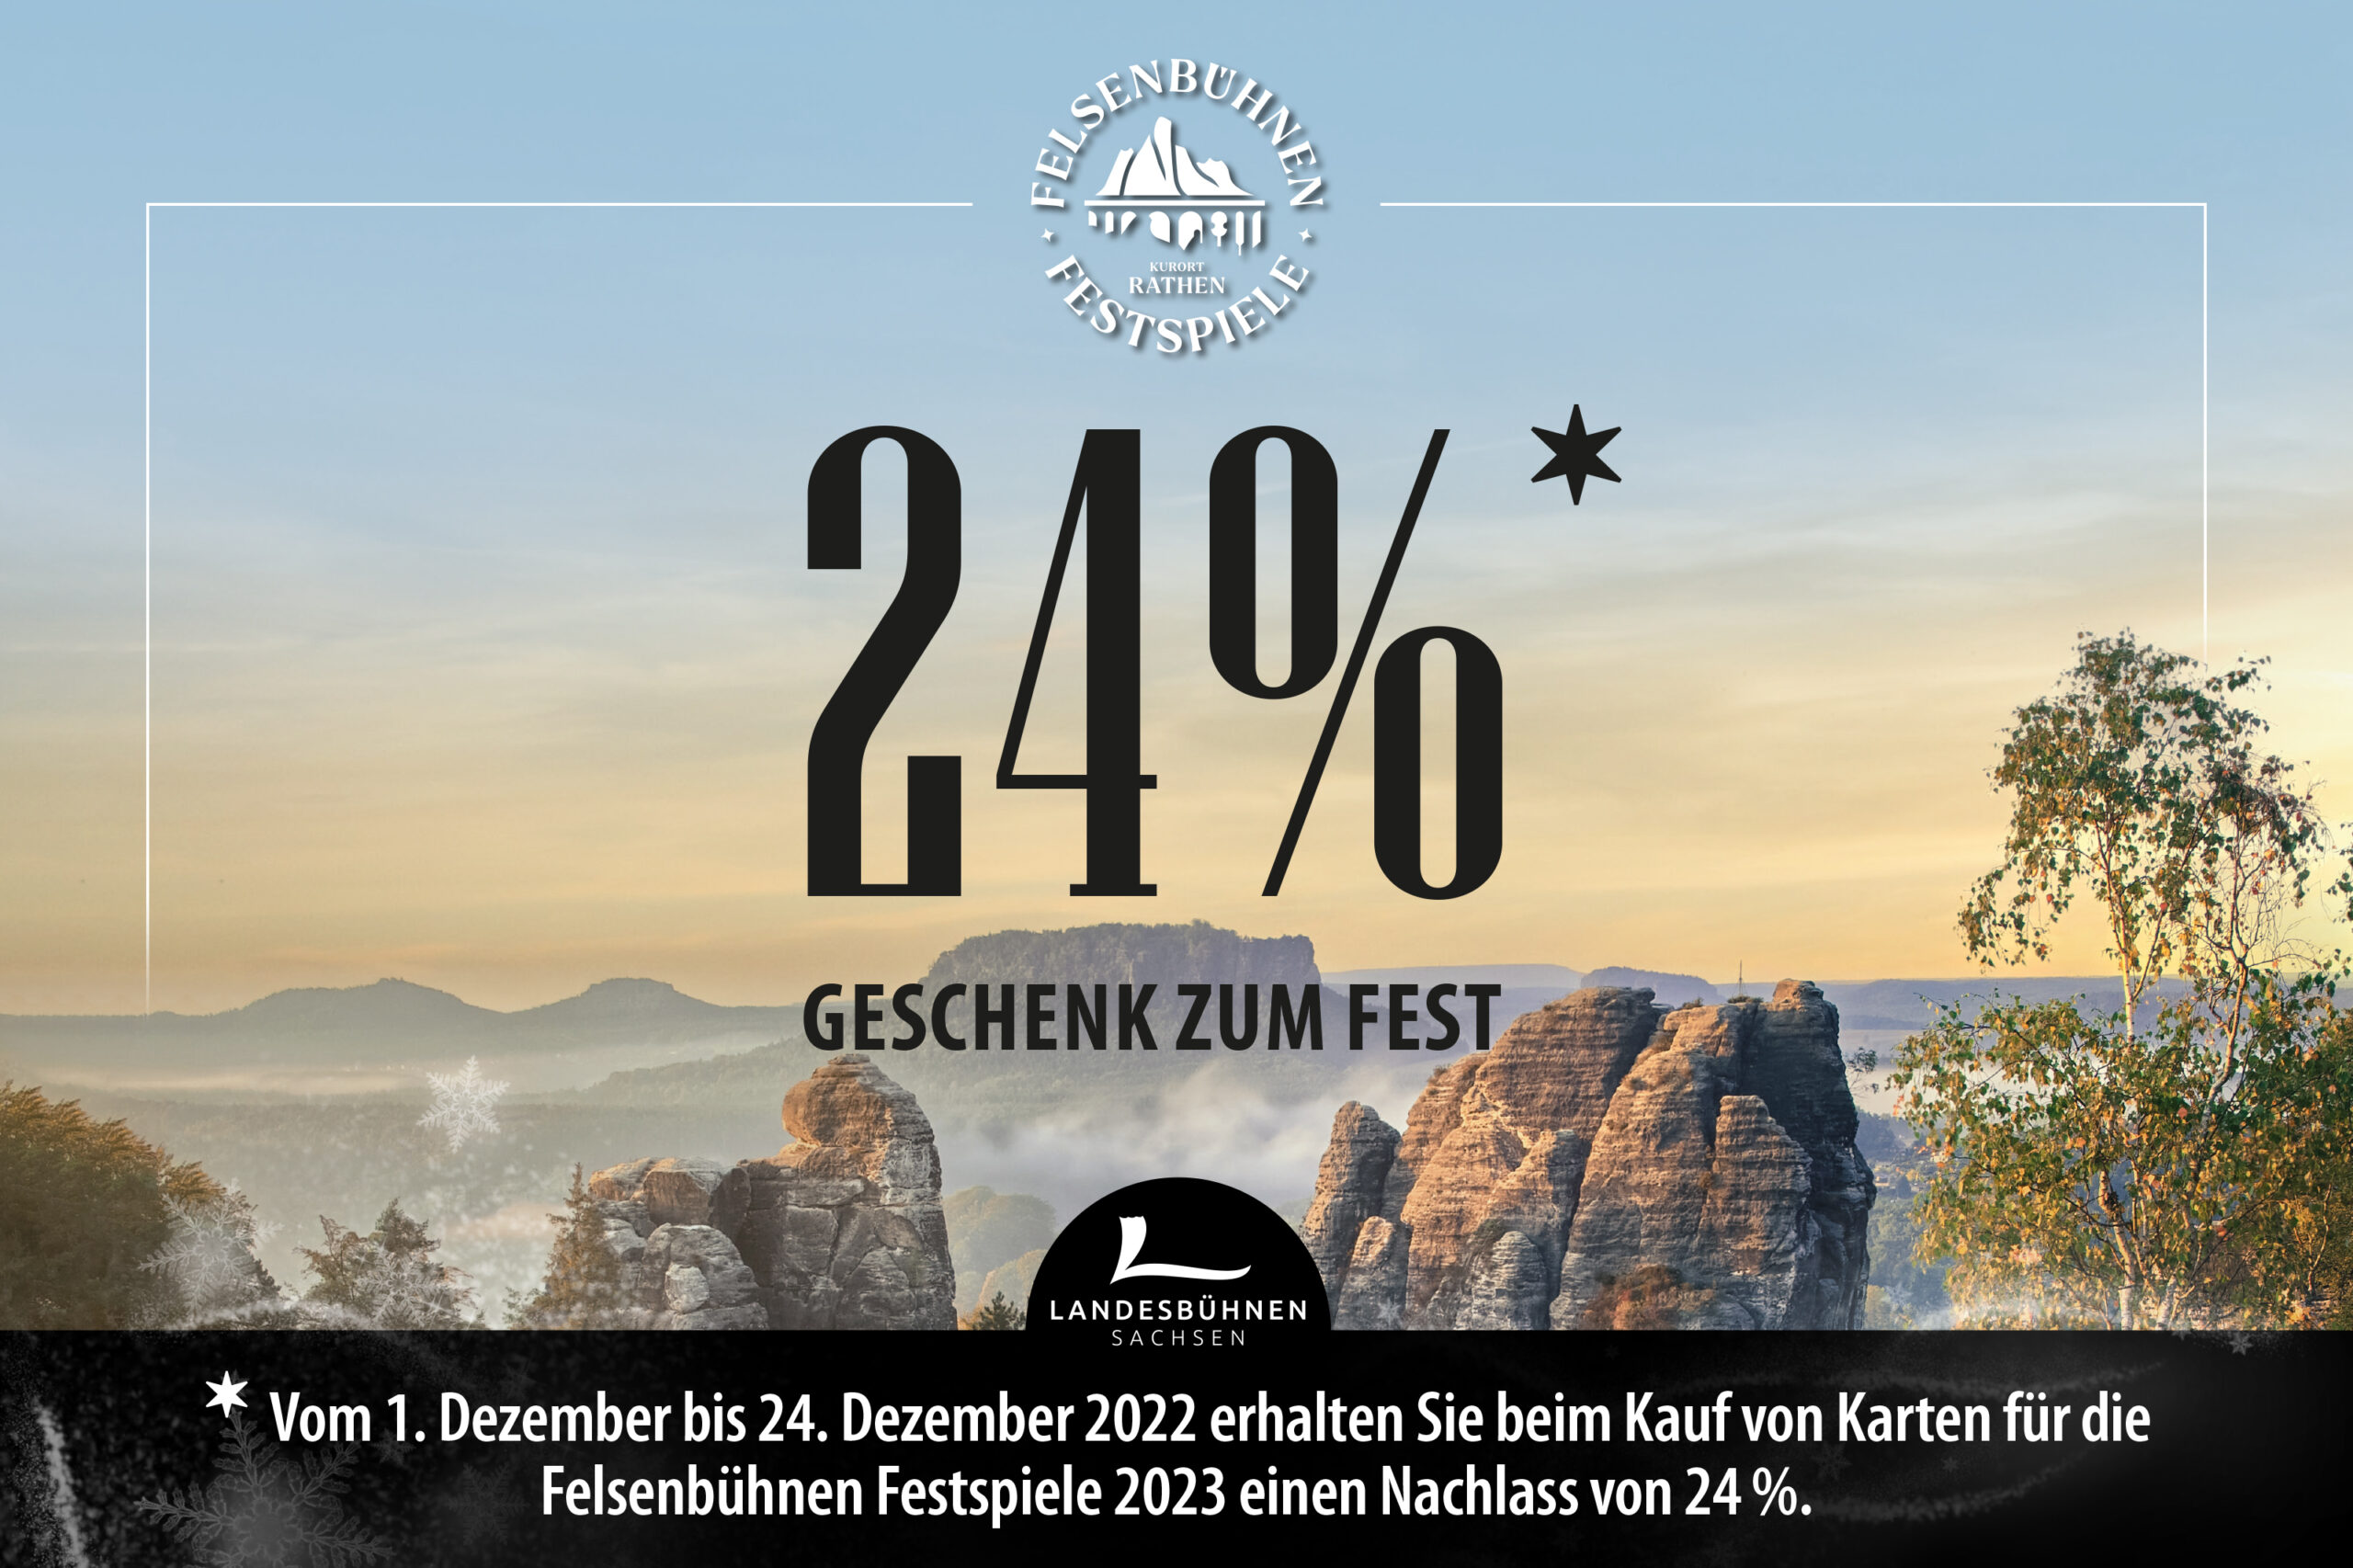 Weihnachtsaktion 2022 - 24% Rabatt auf Tickets der Felsenbühnen Festspiele 2023